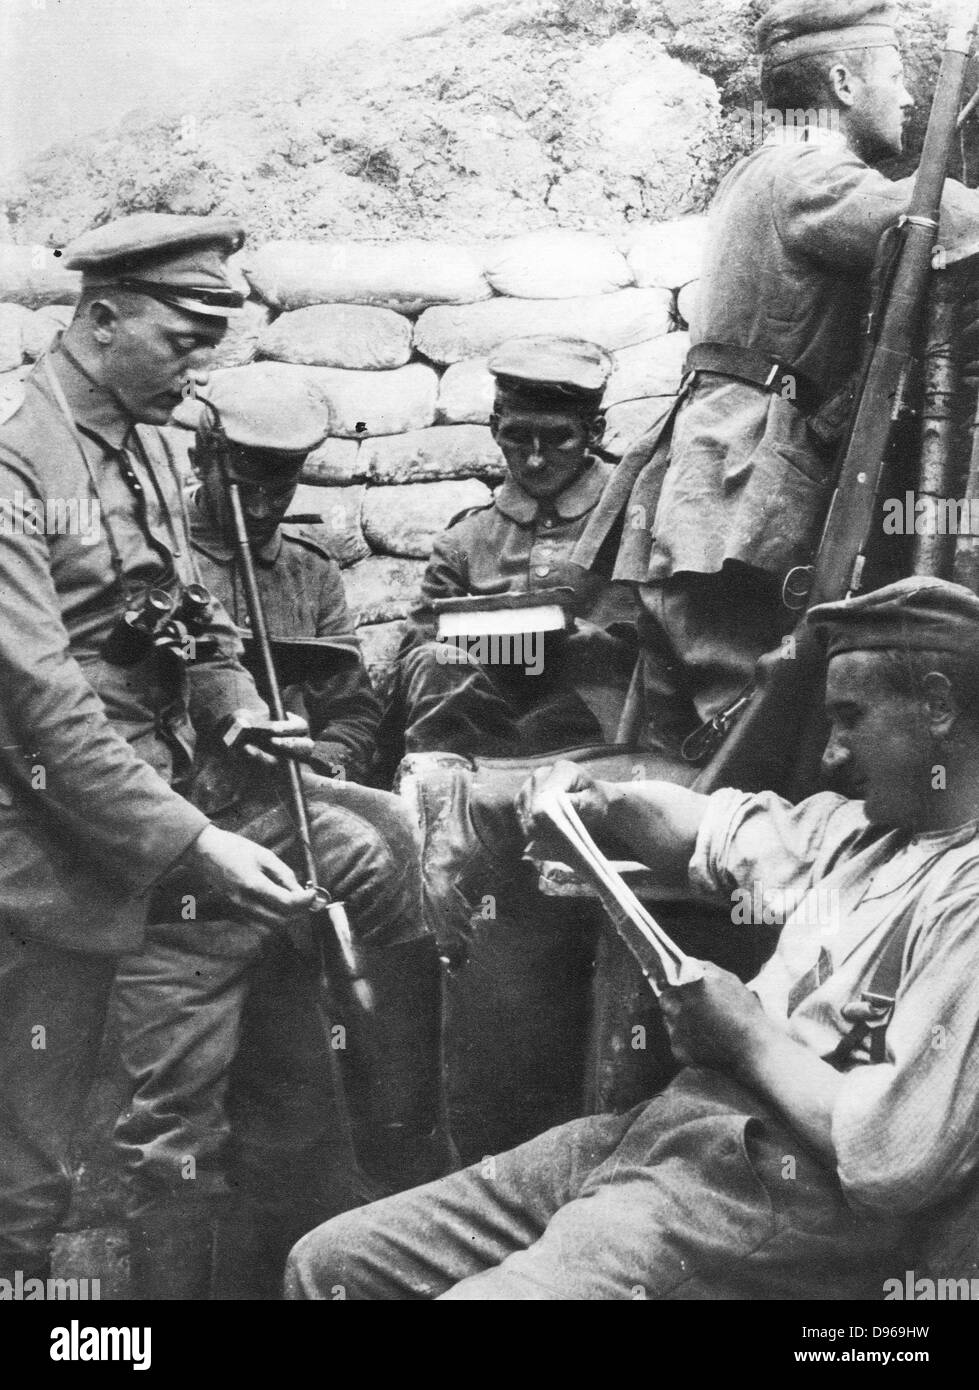 La Première Guerre mondiale, les soldats allemands : la lecture, l'écriture et l'usage du tabac dans les tranchées pendant une accalmie dans les hostilités Banque D'Images